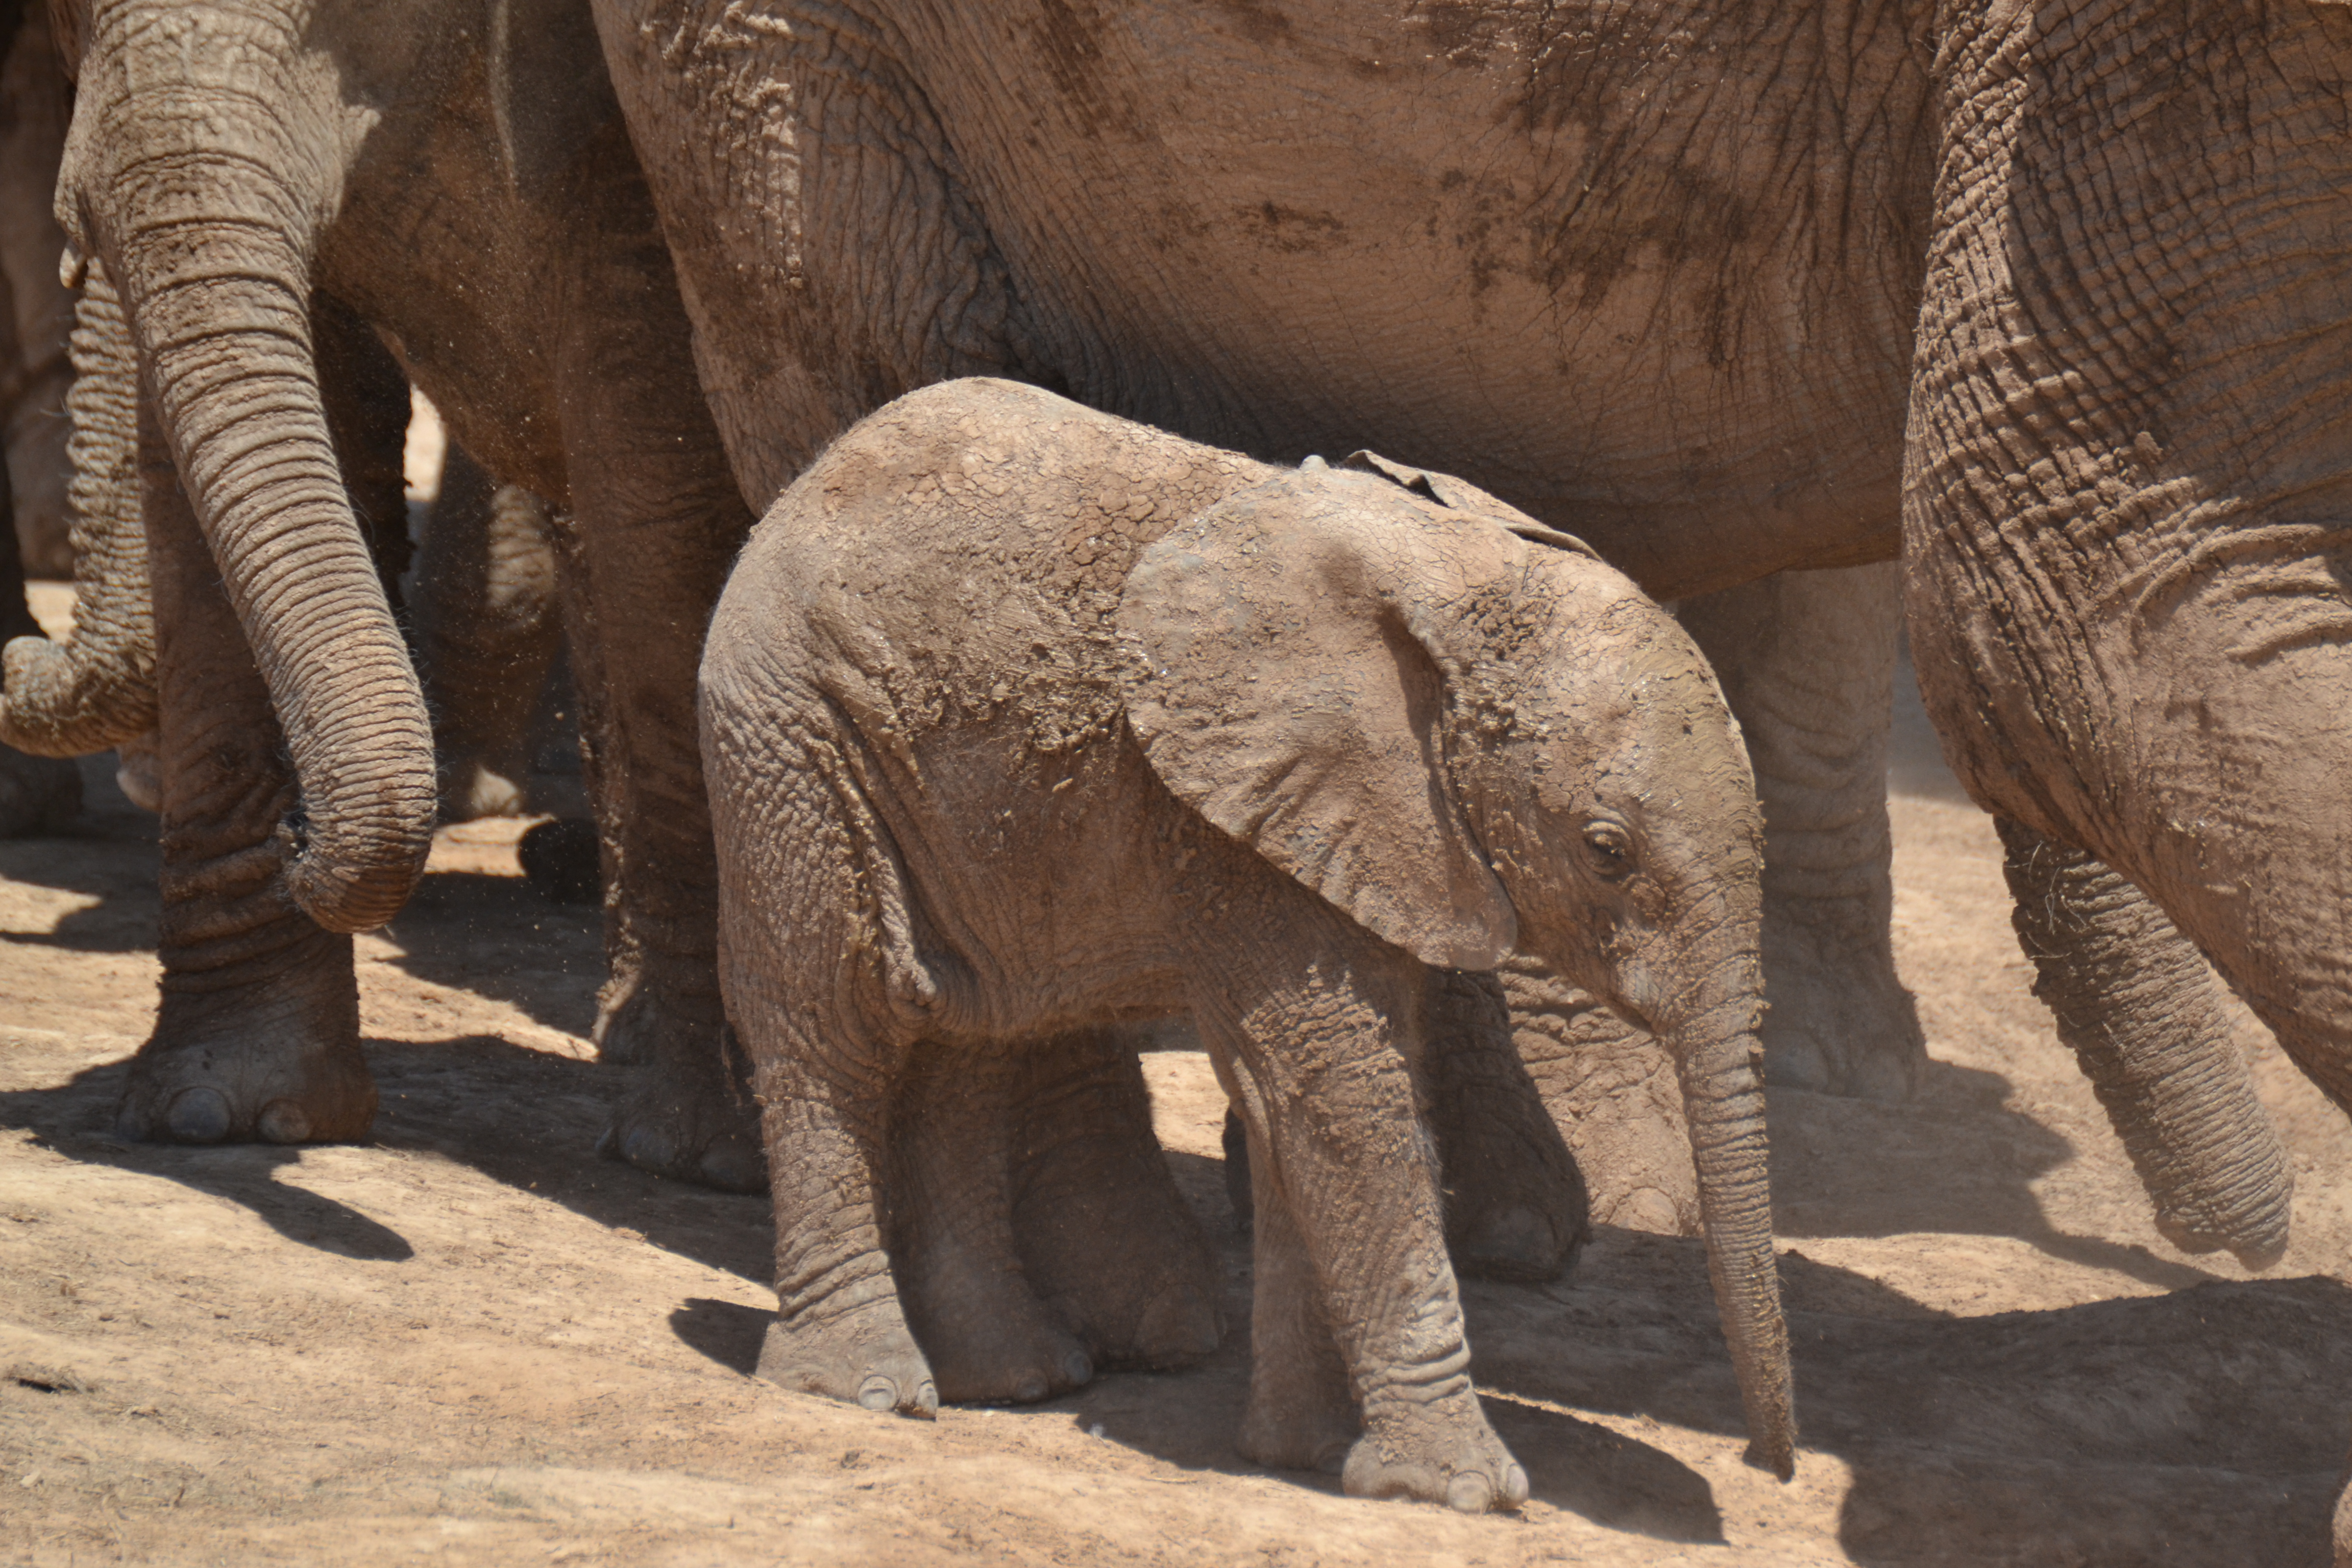 Elefanten im Addo National Park